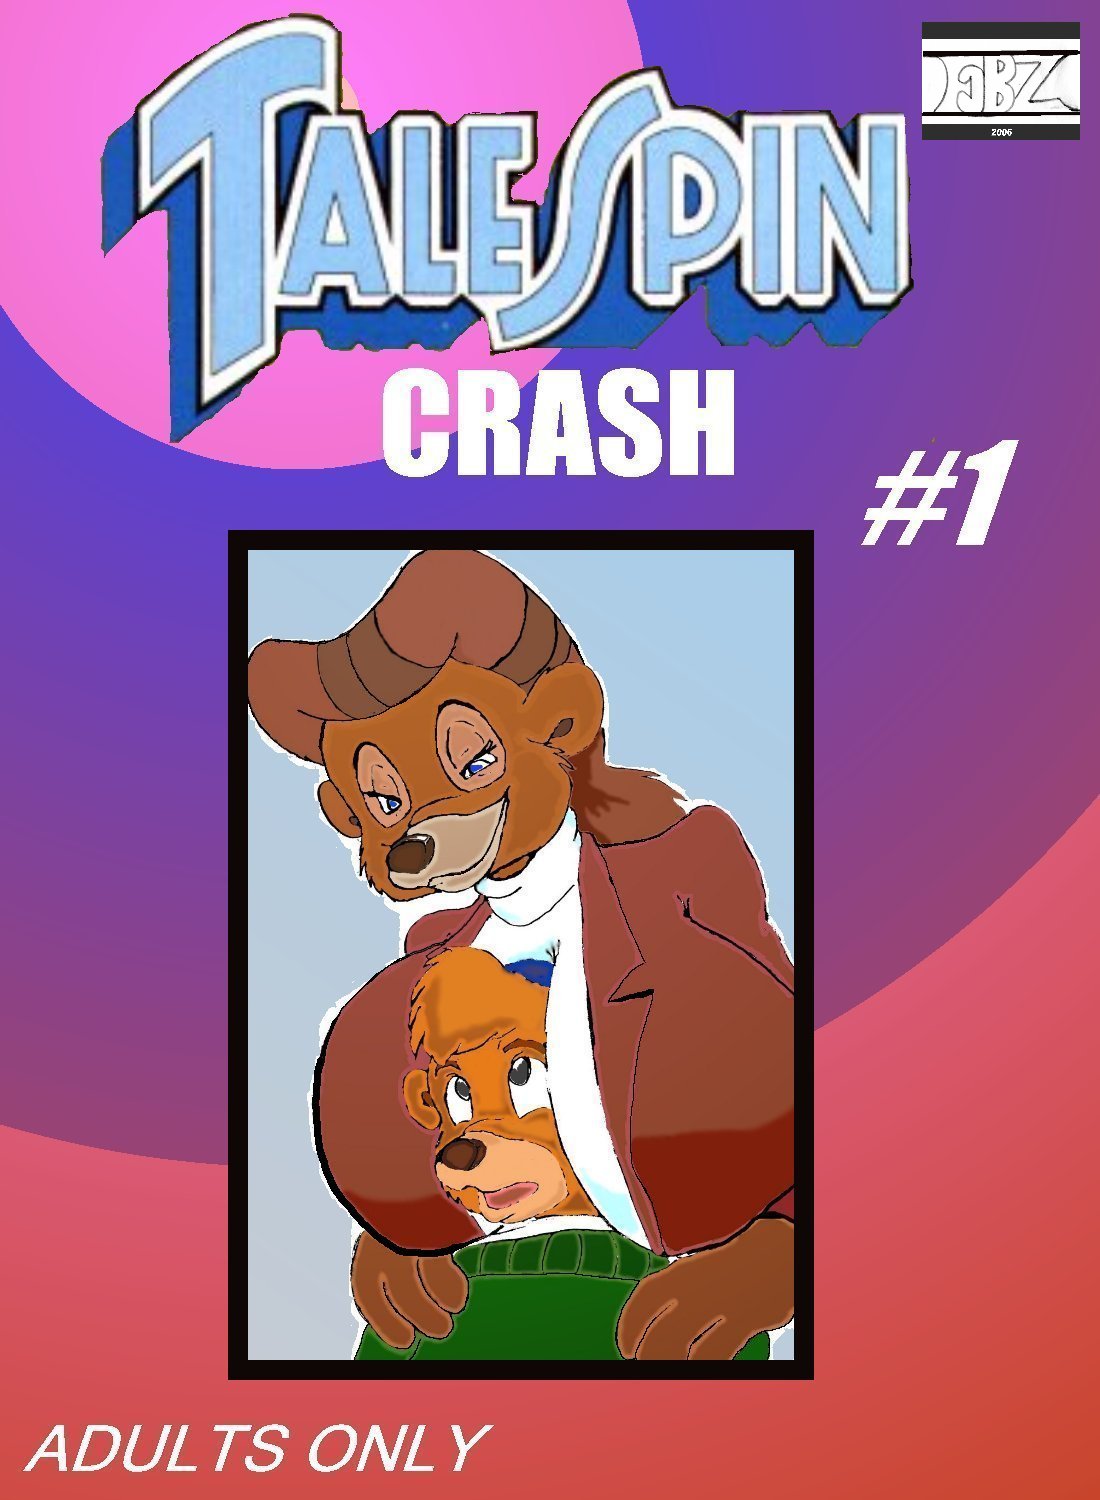 talespin crash.1